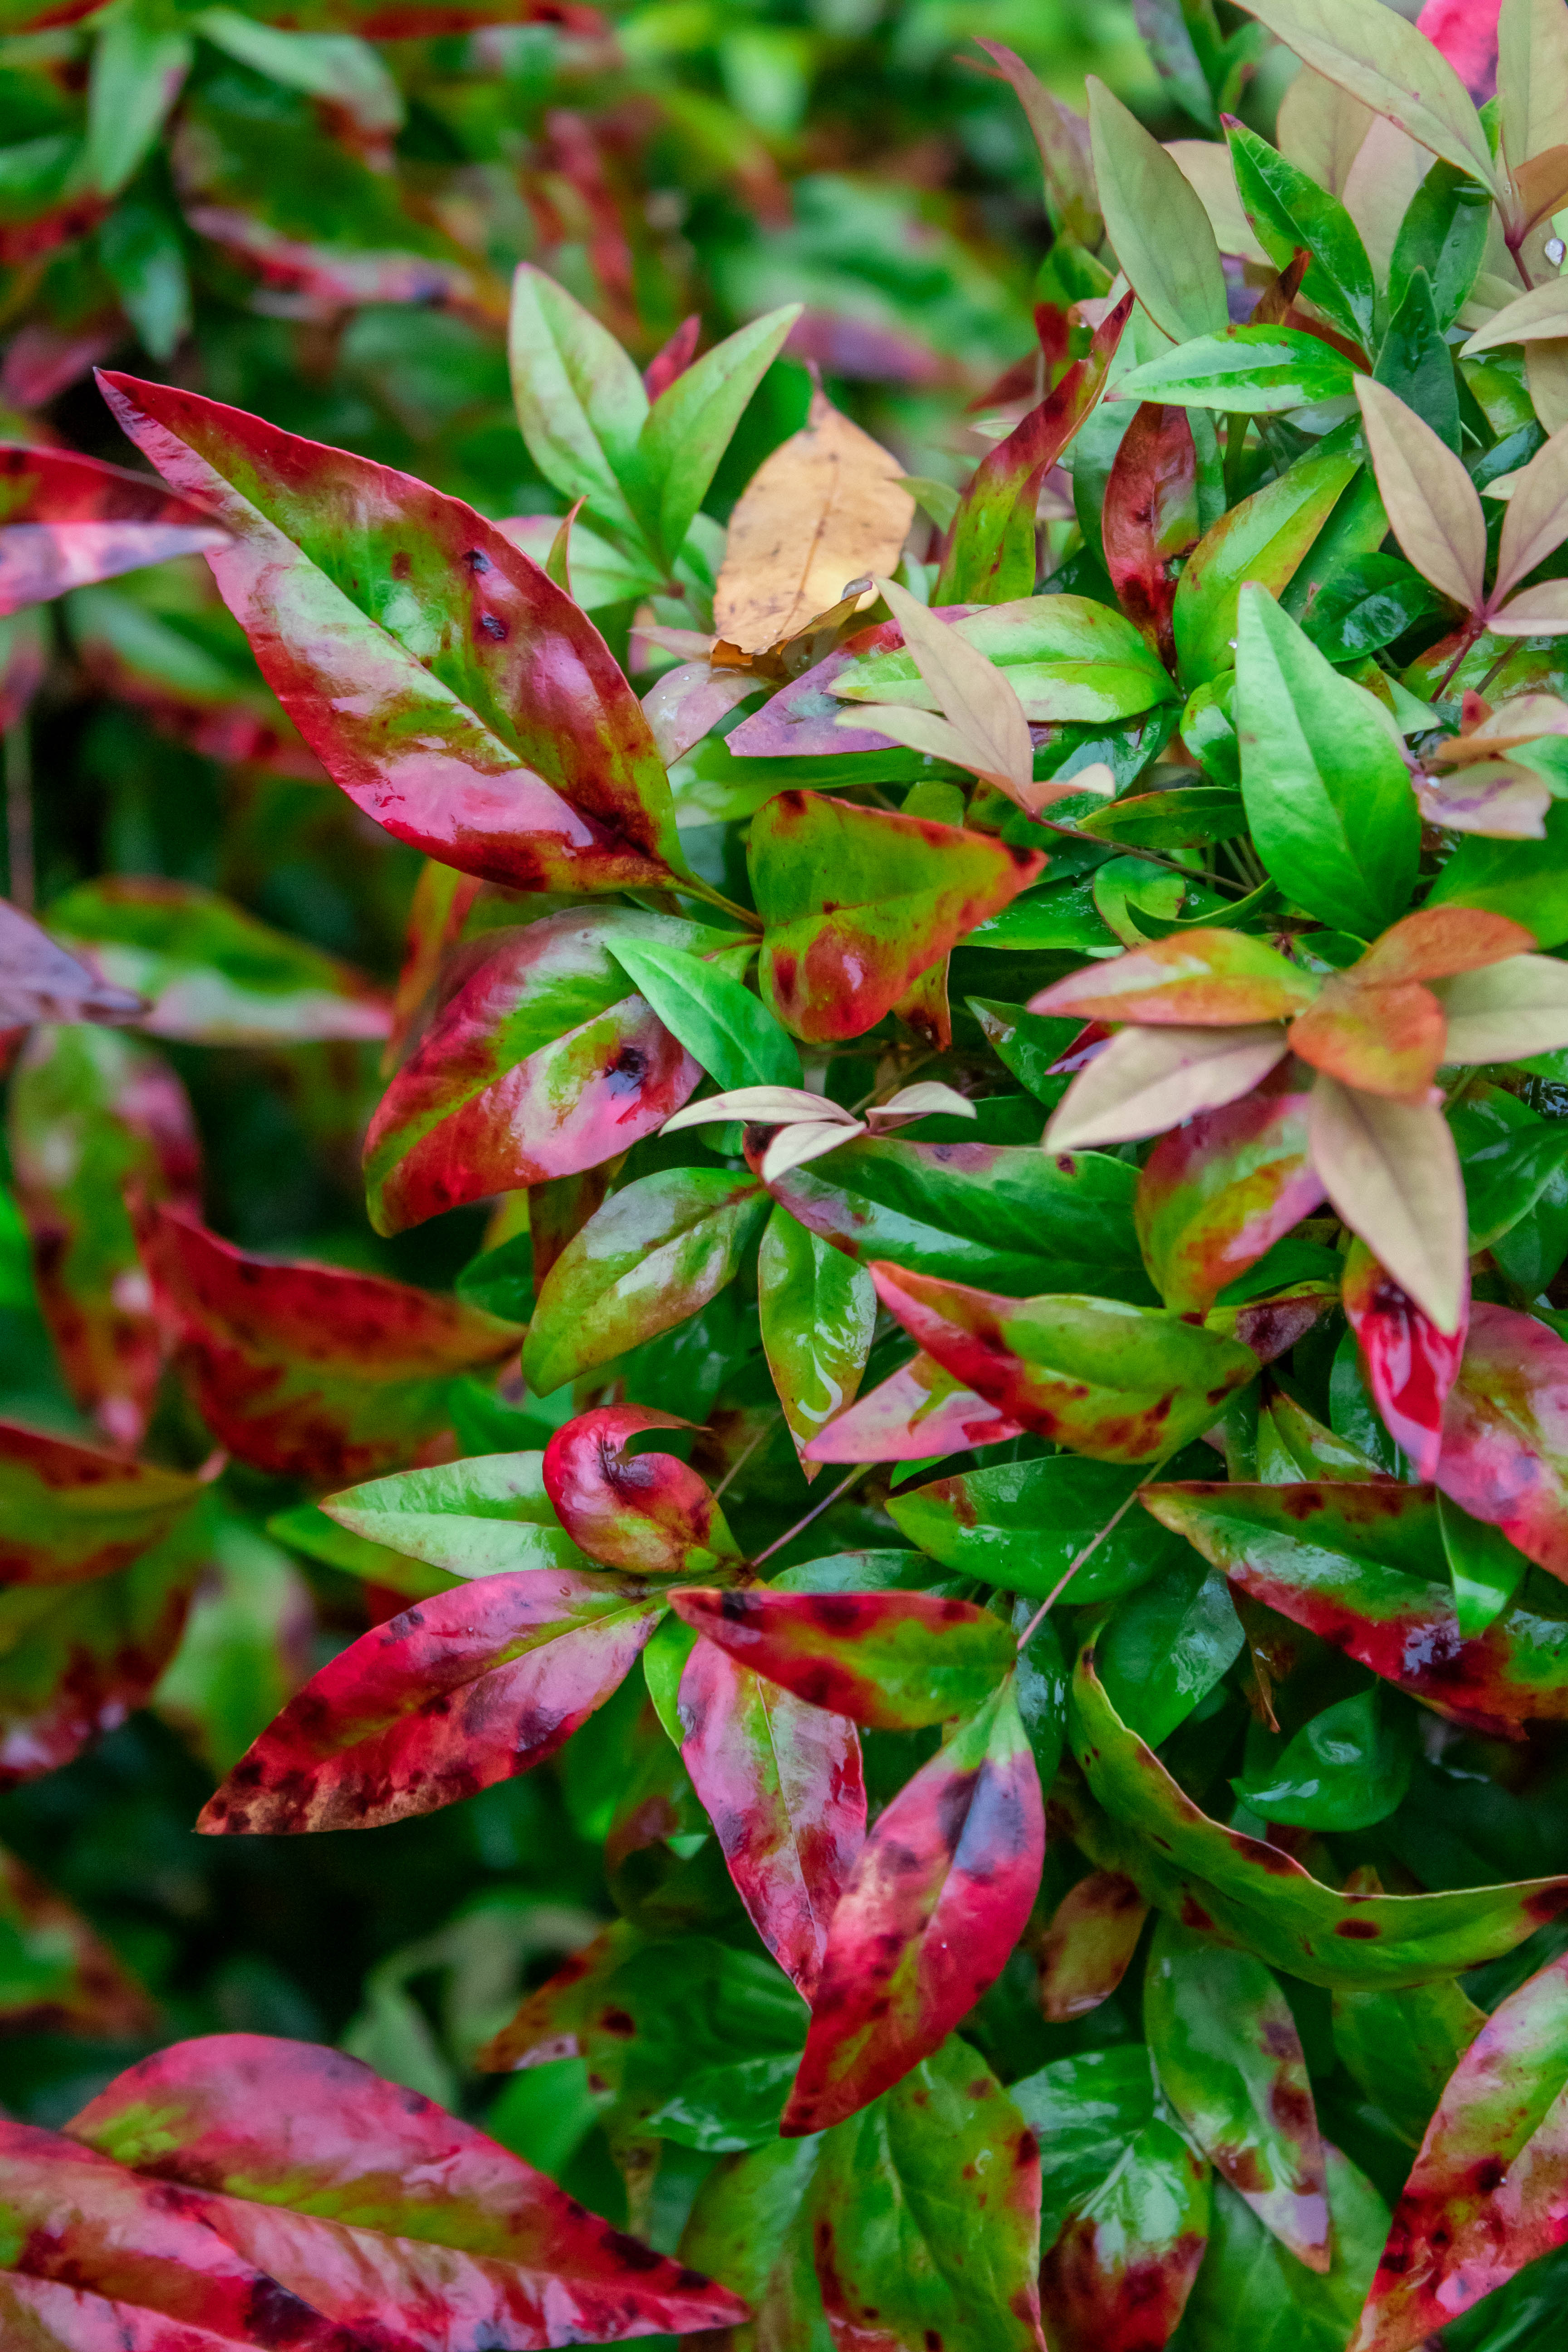 Nandina bush leaves turning red